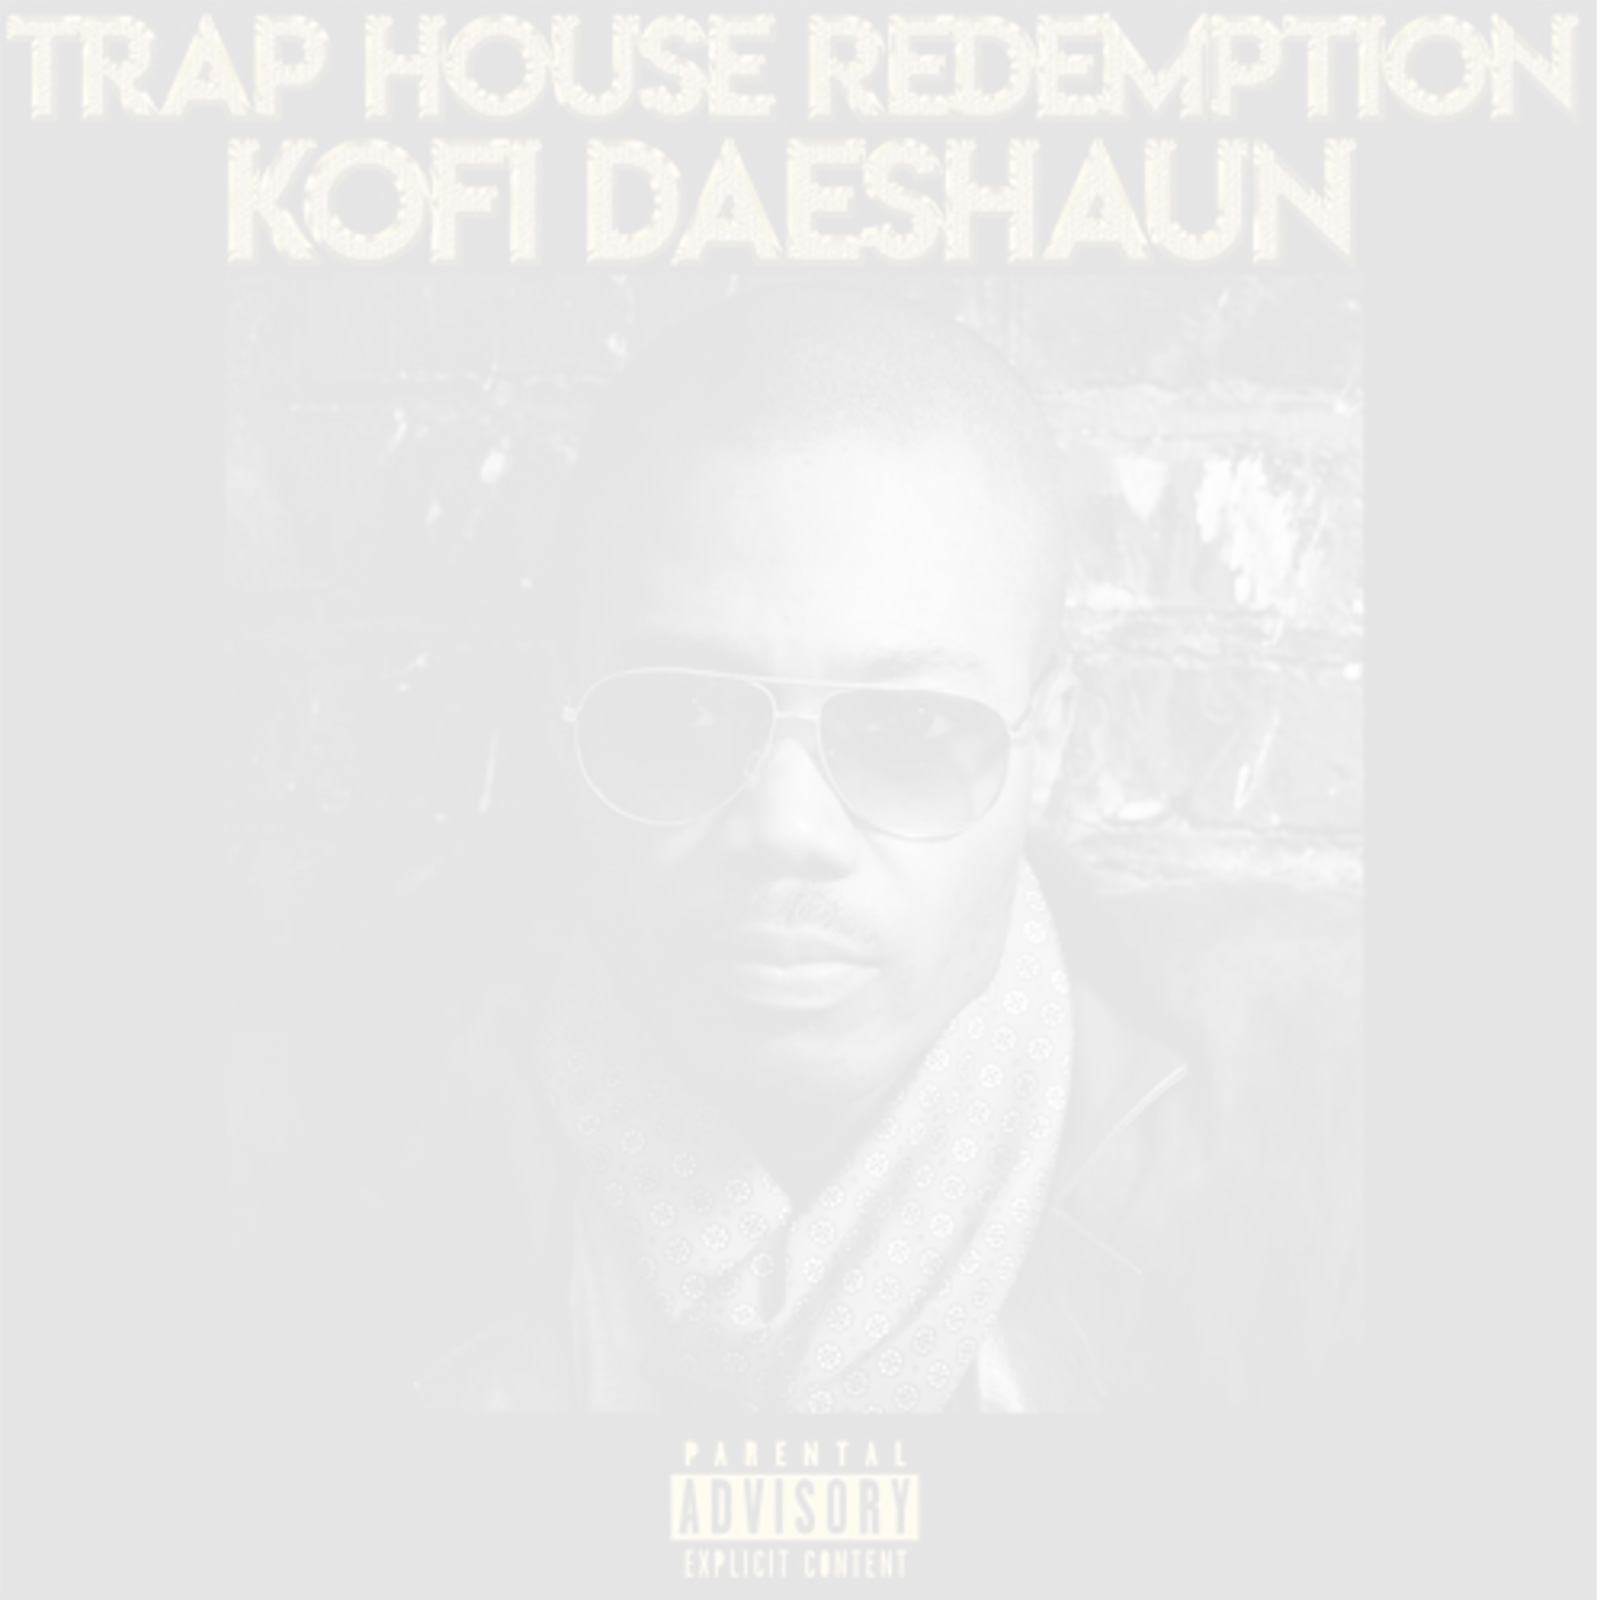 Trap House Redemption by Kofi Daeshaun